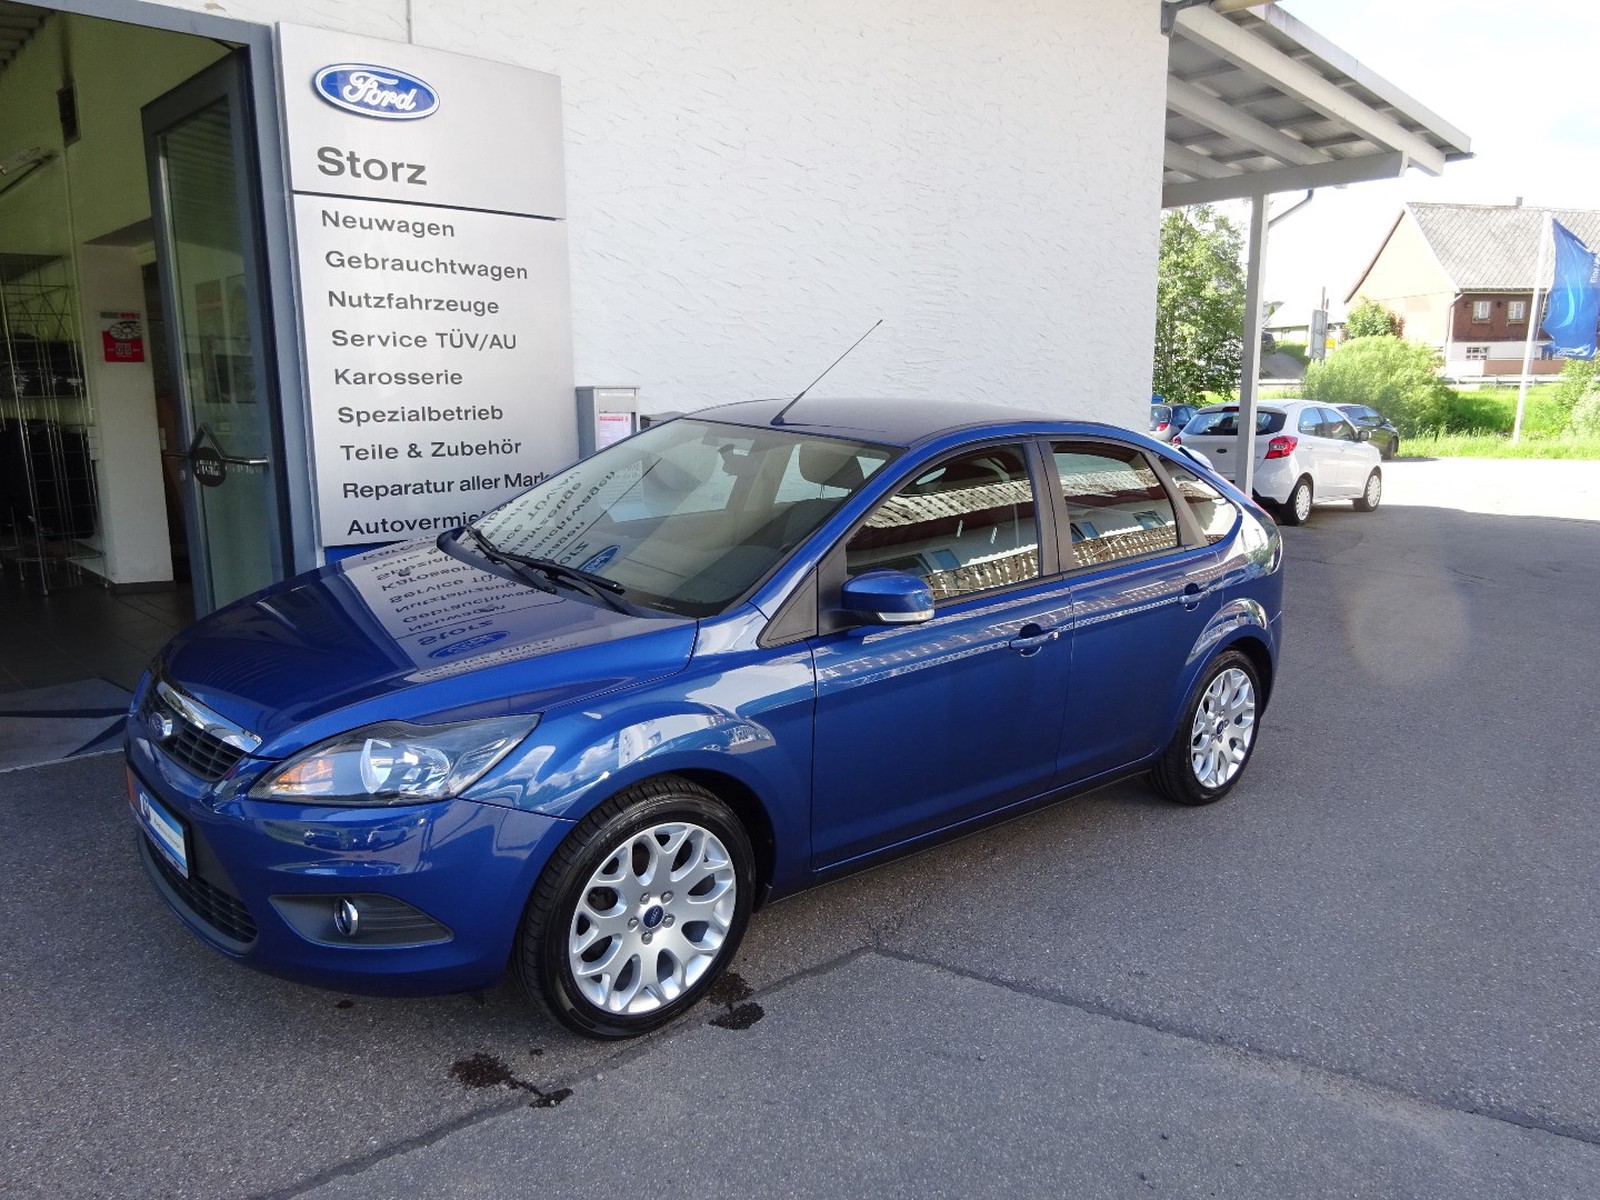 Ford Focus Sport Gebraucht Kaufen In Furtwangen Preis 5390 Eur Int Nr 05fw591 Verkauft